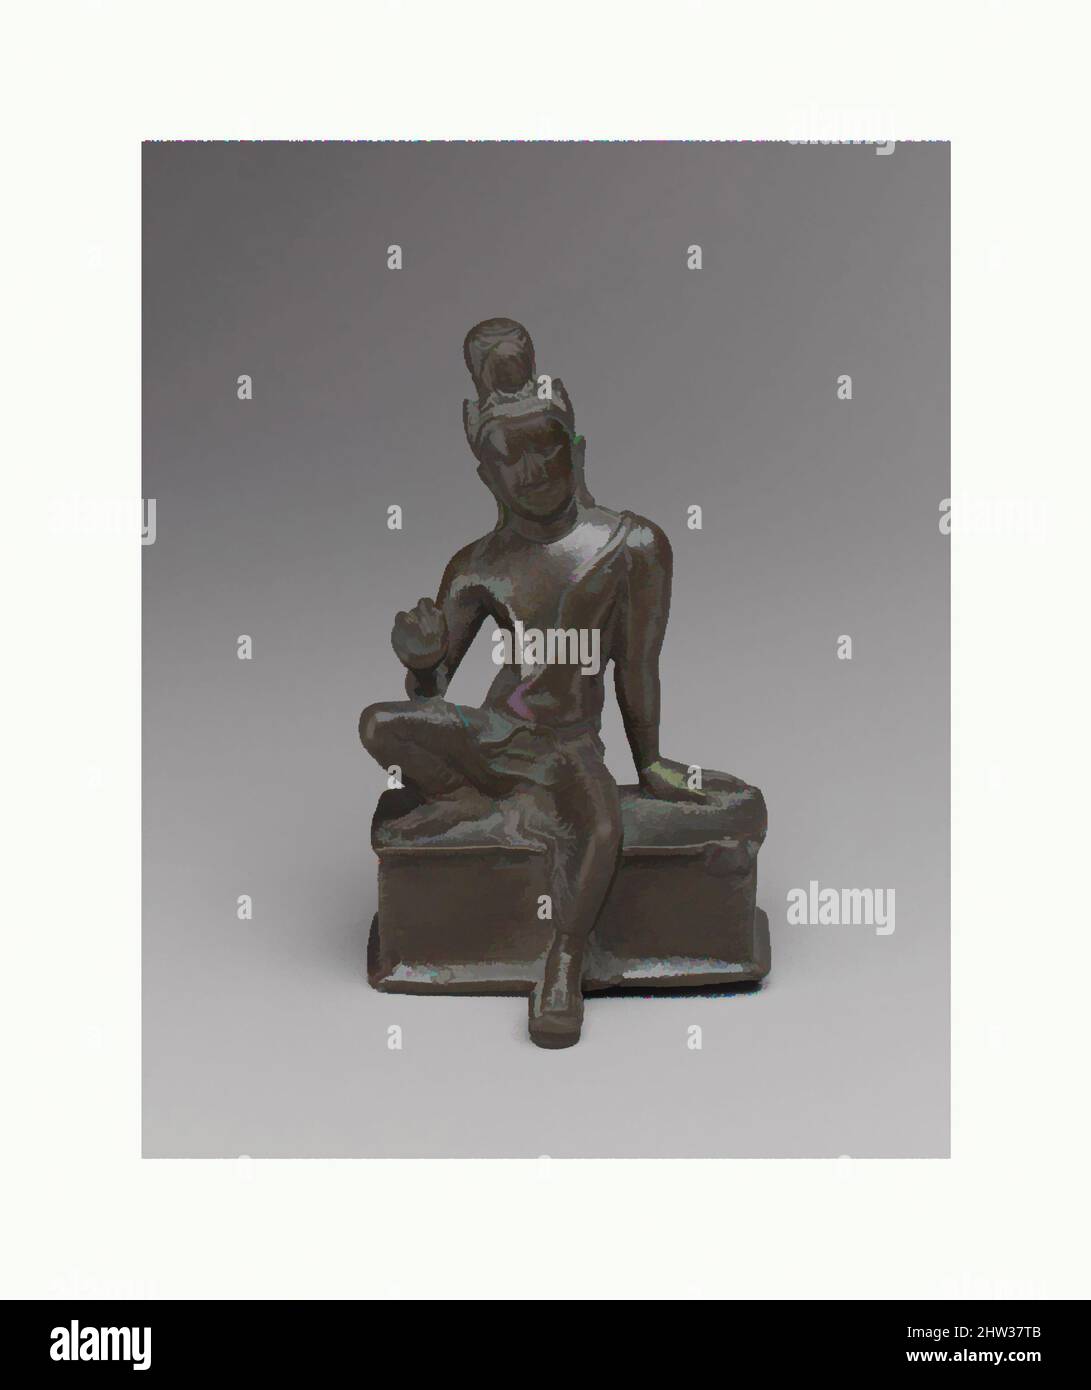 Kunst inspiriert von sitzender Avalokiteshvara, dem Bodhisattva des Unendlichen Mitgefühls, Anuradhapura-Periode, ca. Ende 7.–erste Hälfte des 8.. Jahrhunderts, Sri Lanka, zentrale Regionen, Bronze, H. 3 1/4 Zoll (8,3 cm); B: 2 1/8 Zoll (5,4 cm); D. 1 5/8 Zoll (4,1 cm), Skulptur, die frühe Geschichte Sri, Klassisches Werk, das von Artotop mit einem Schuss Moderne modernisiert wurde. Formen, Farbe und Wert, auffällige visuelle Wirkung auf Kunst. Emotionen durch Freiheit von Kunstwerken auf zeitgemäße Weise. Eine zeitlose Botschaft, die eine wild kreative neue Richtung verfolgt. Künstler, die sich dem digitalen Medium zuwenden und die Artotop NFT erschaffen Stockfoto